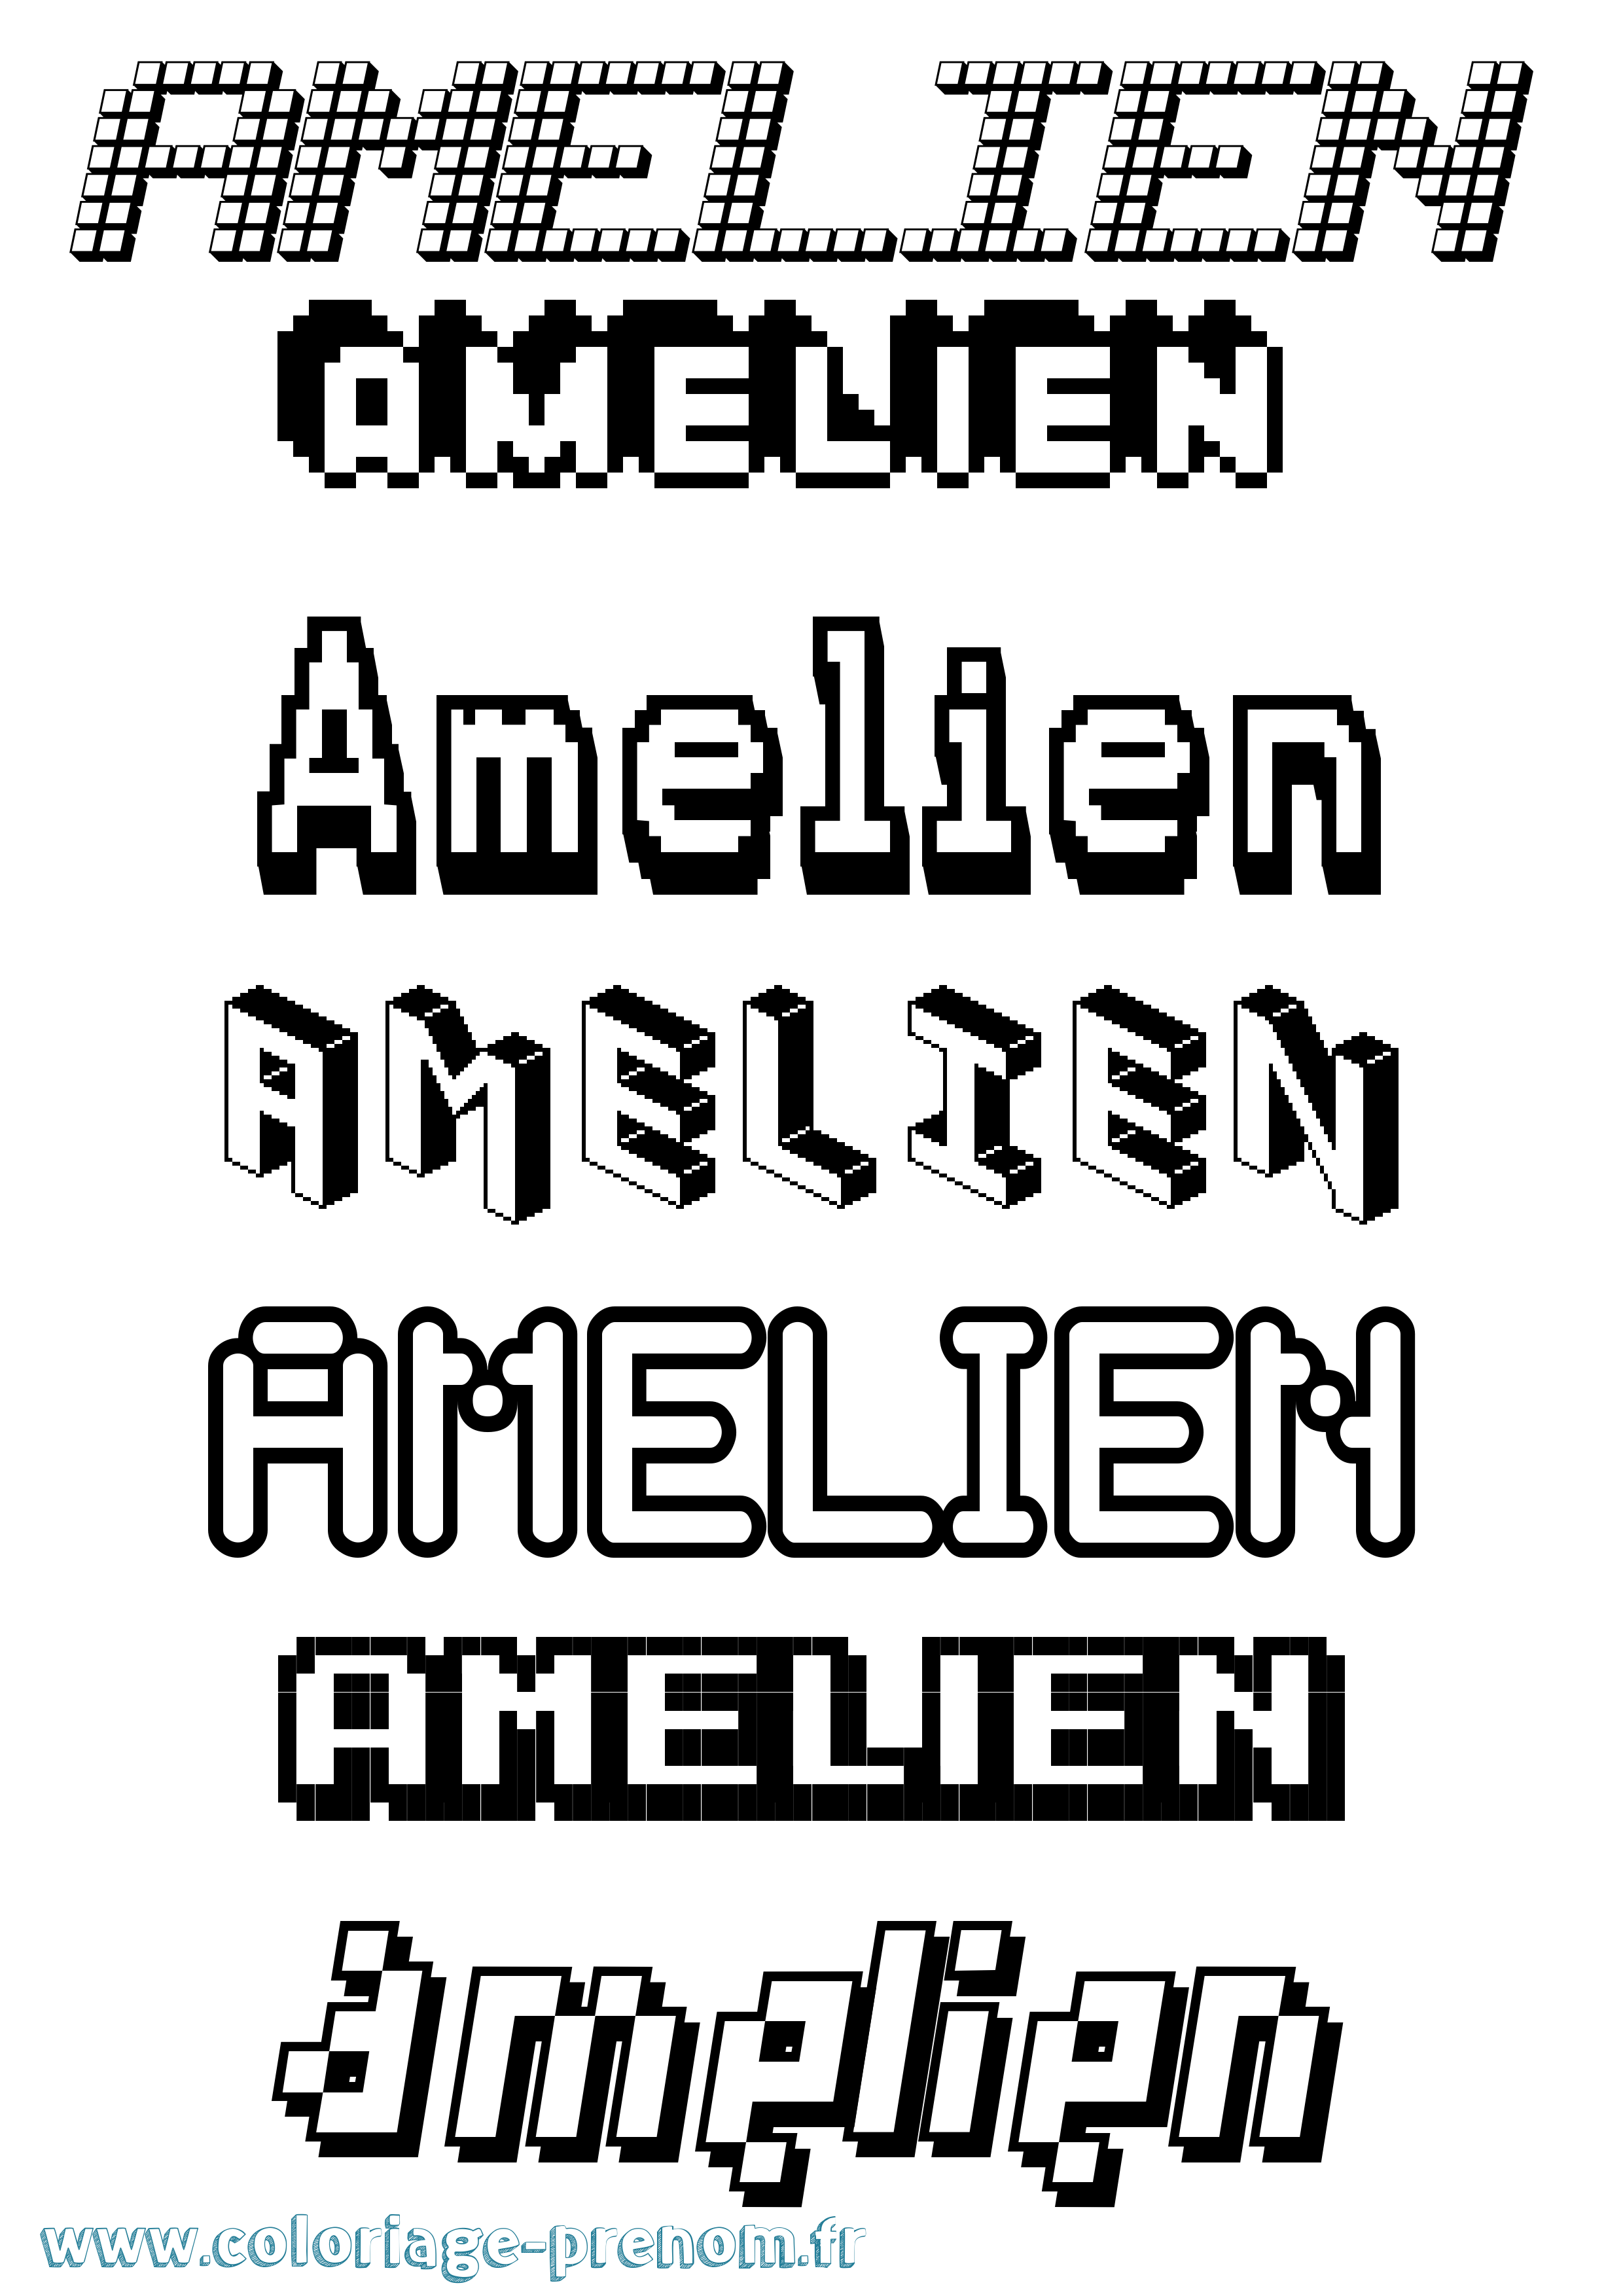 Coloriage prénom Amelien Pixel